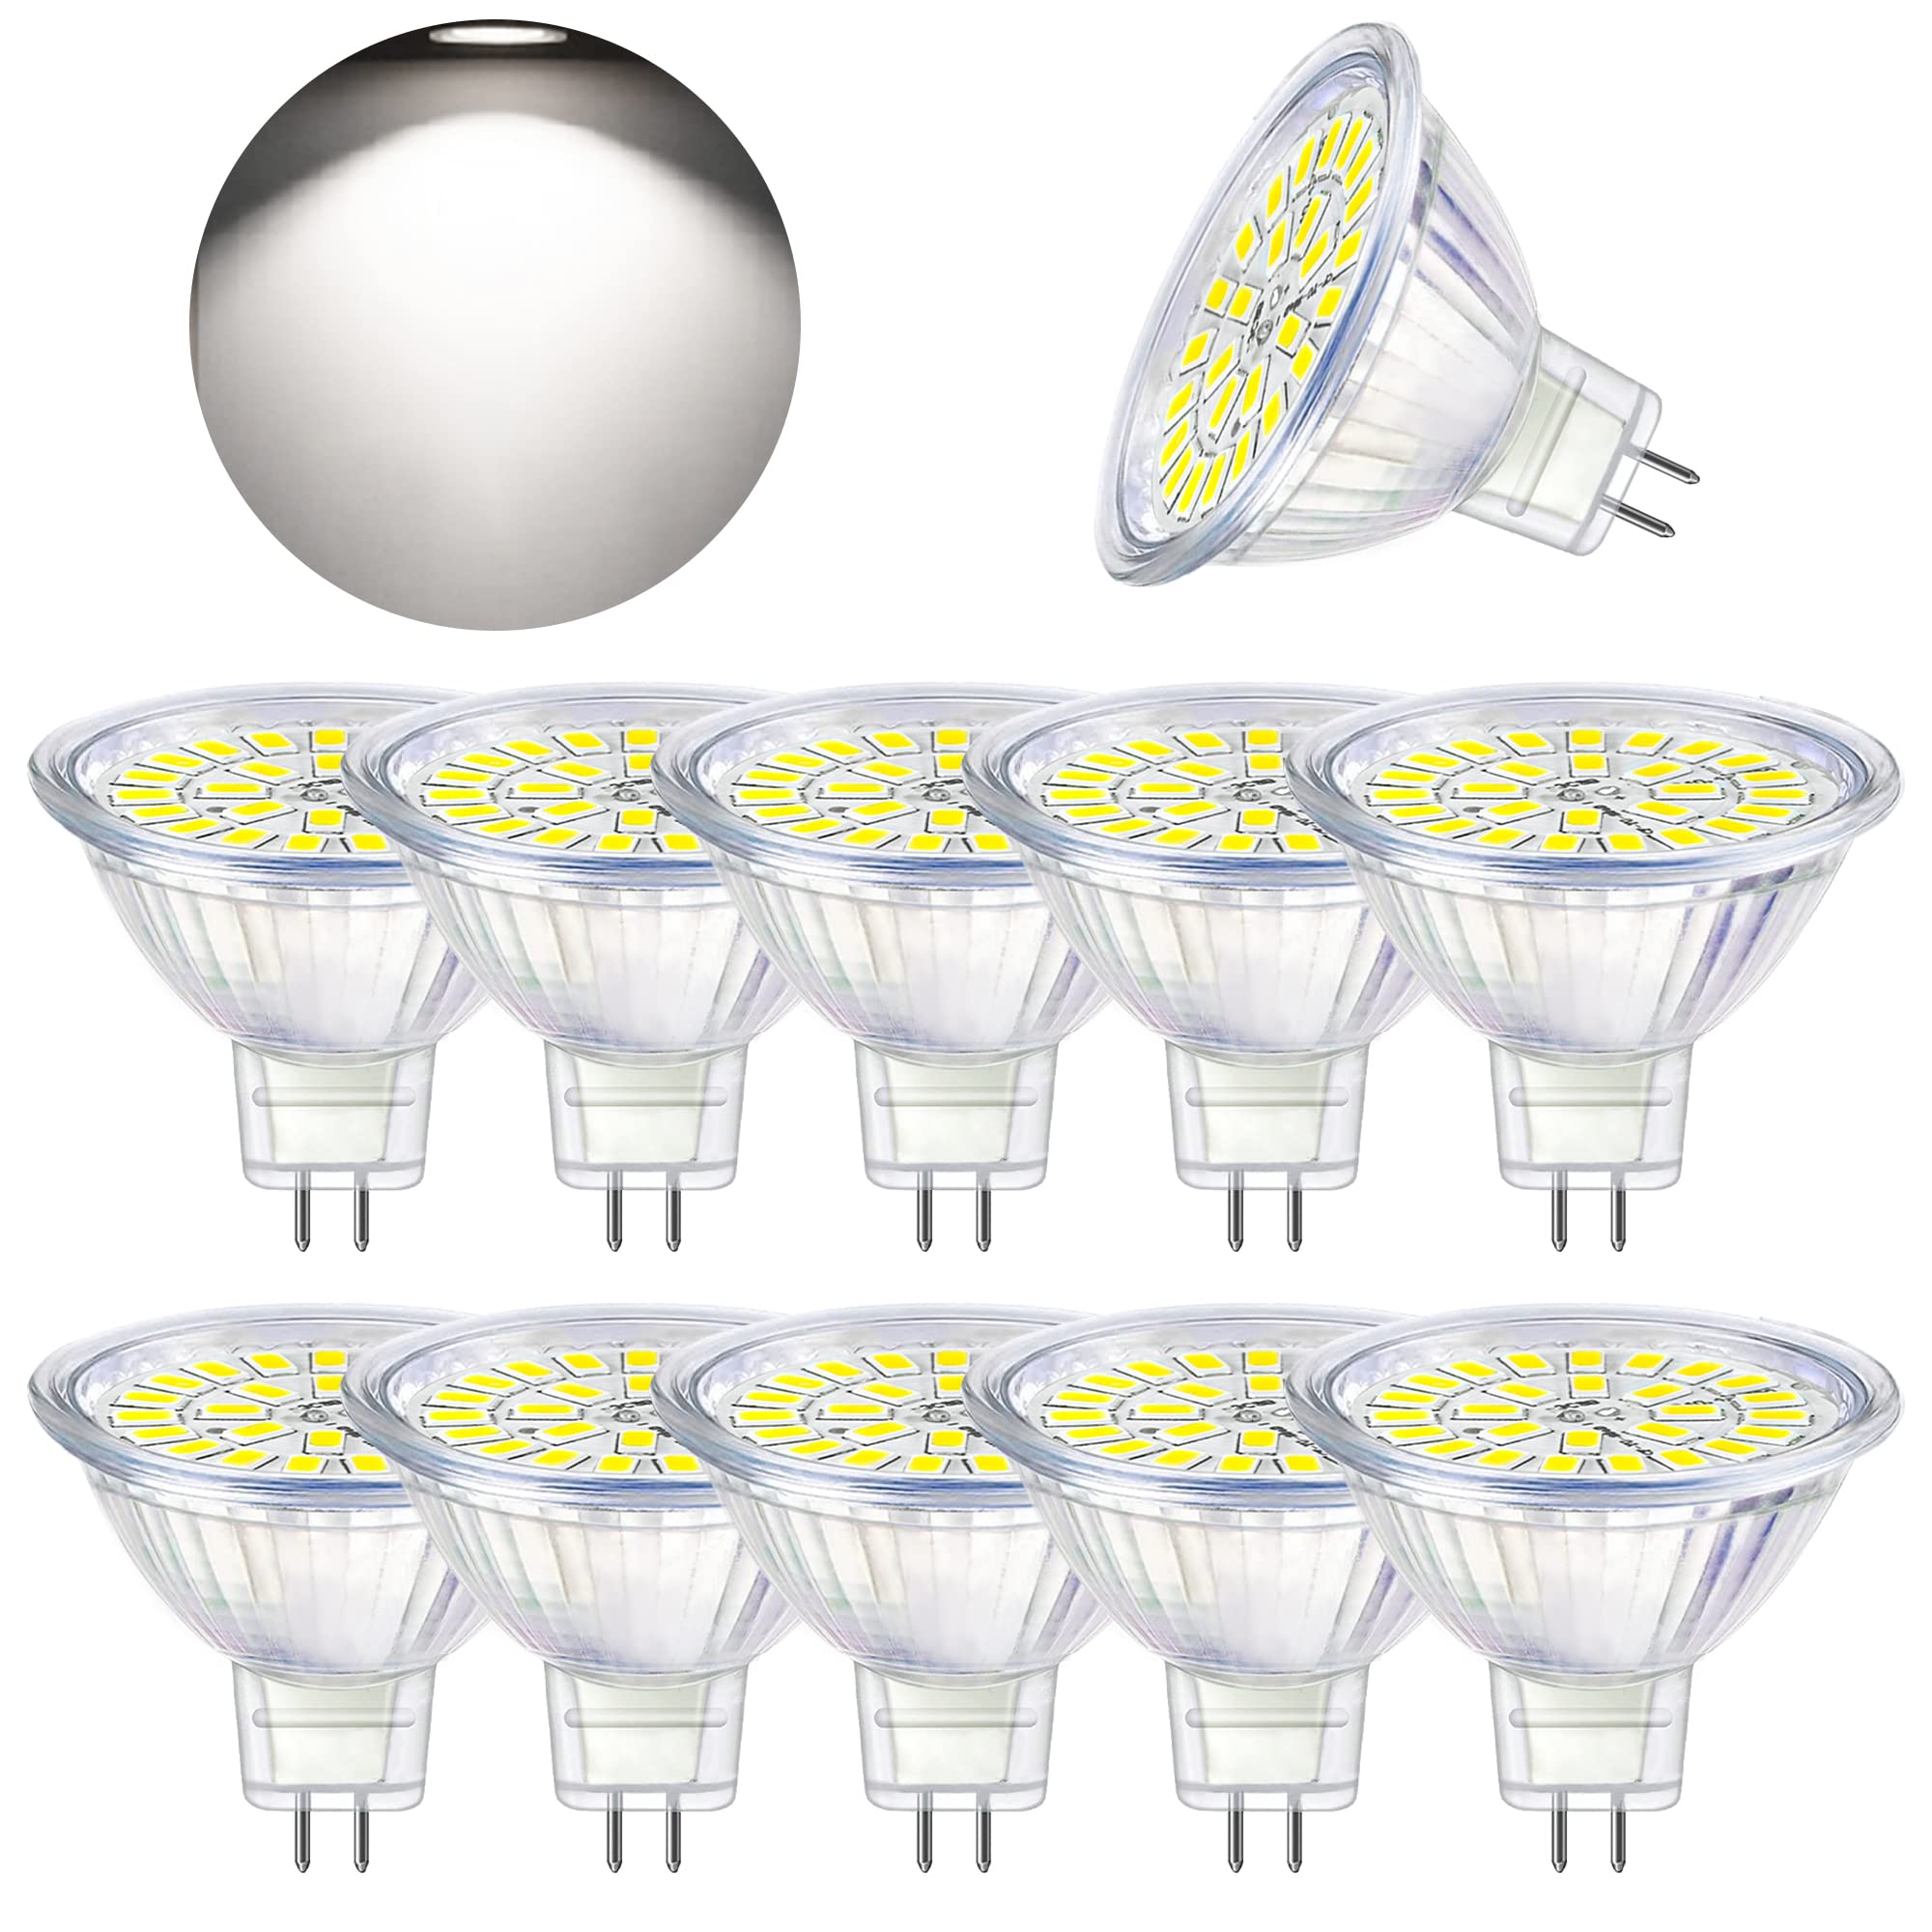 Tendance  Bombubilla Ampoule LED GU5.3 Blanc Froid 6000K, MR16 LED 12V 5W Equivalent à 50W Halogène, Ampoules LED Spot Non Dimmable, Lot de 10    [Classe énergétique F] t9lGXUQFQ mode